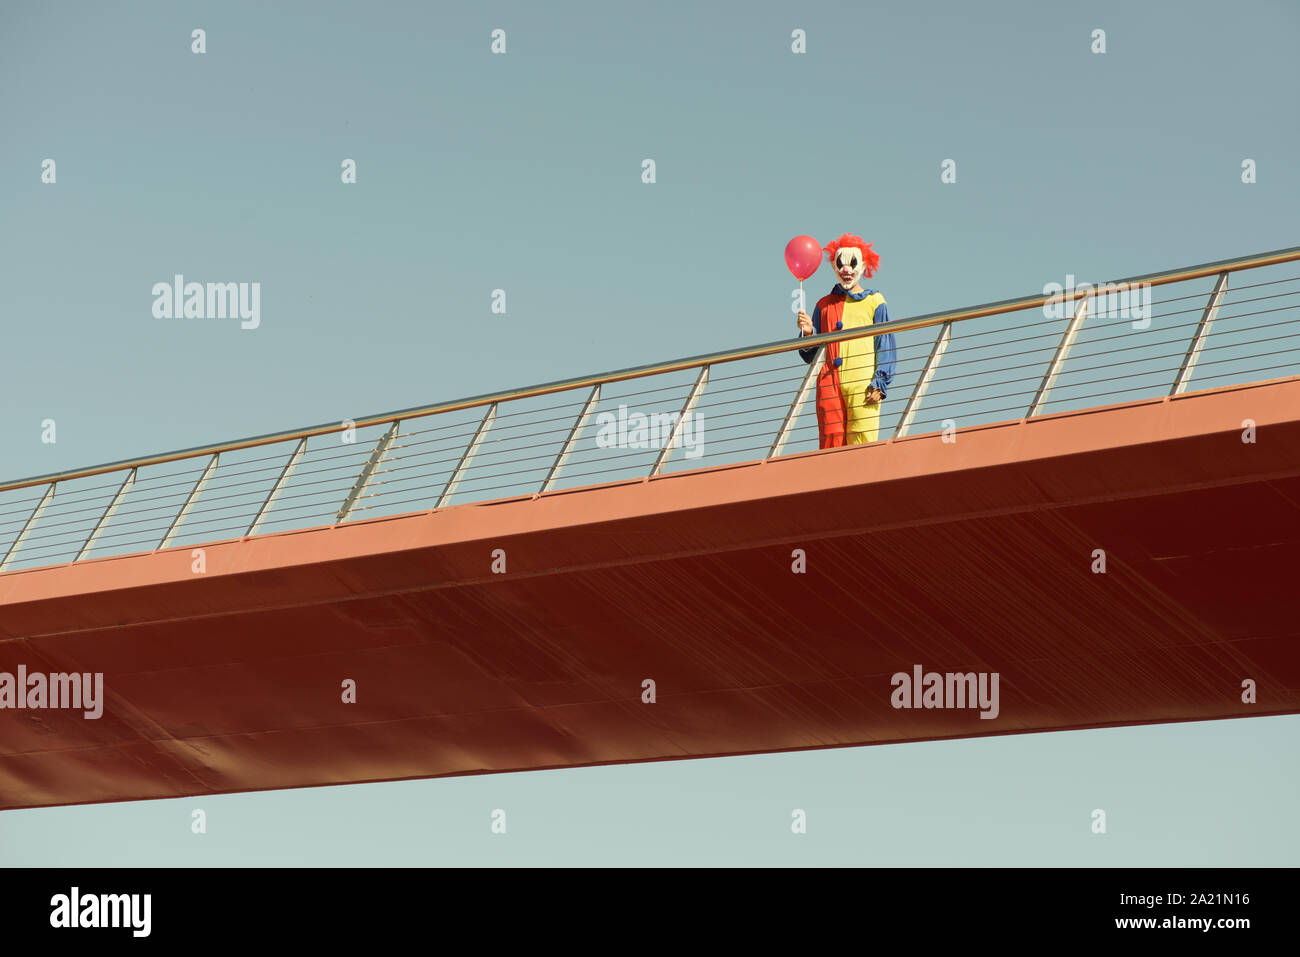 Un clown effrayant colorés portant un jaune, rouge et bleu costume, tenant un ballon rouge dans sa main, debout dans un pont en plein air Banque D'Images